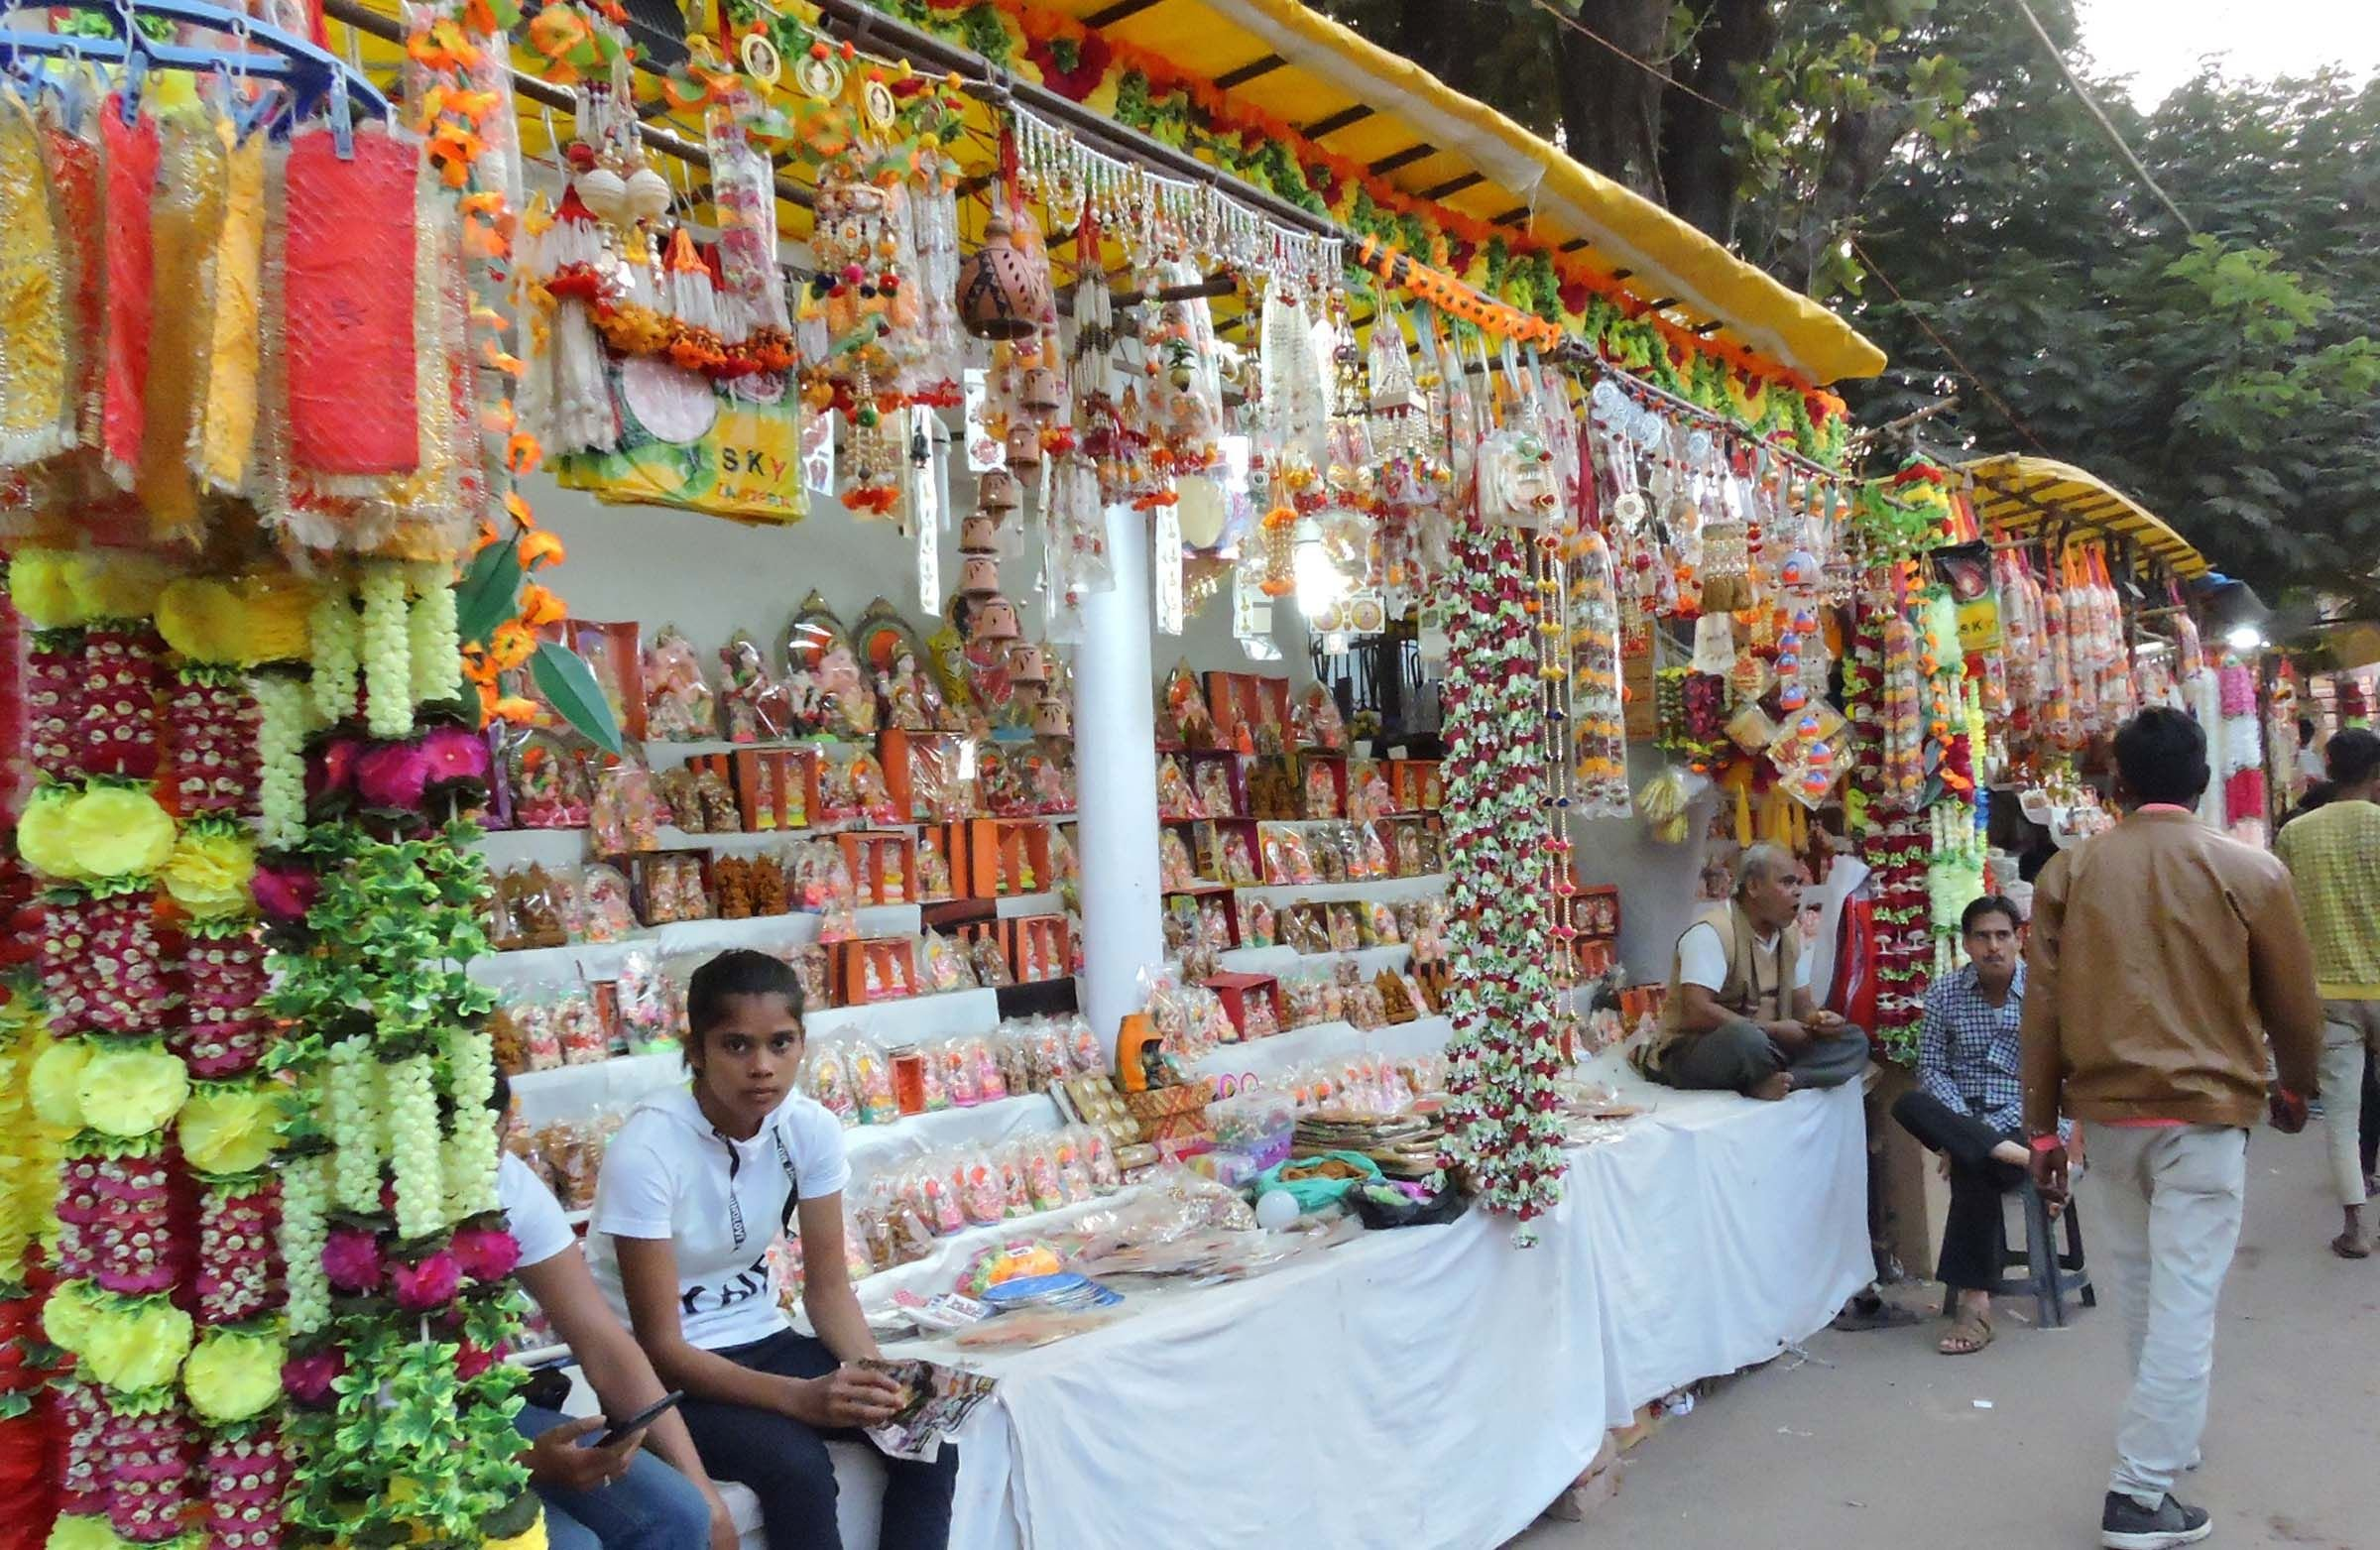 धनतेरस: बरेली के बाजार में खरीददारी को उमड़ी भीड़, दुल्हन की तरह सजा पूरा शहर